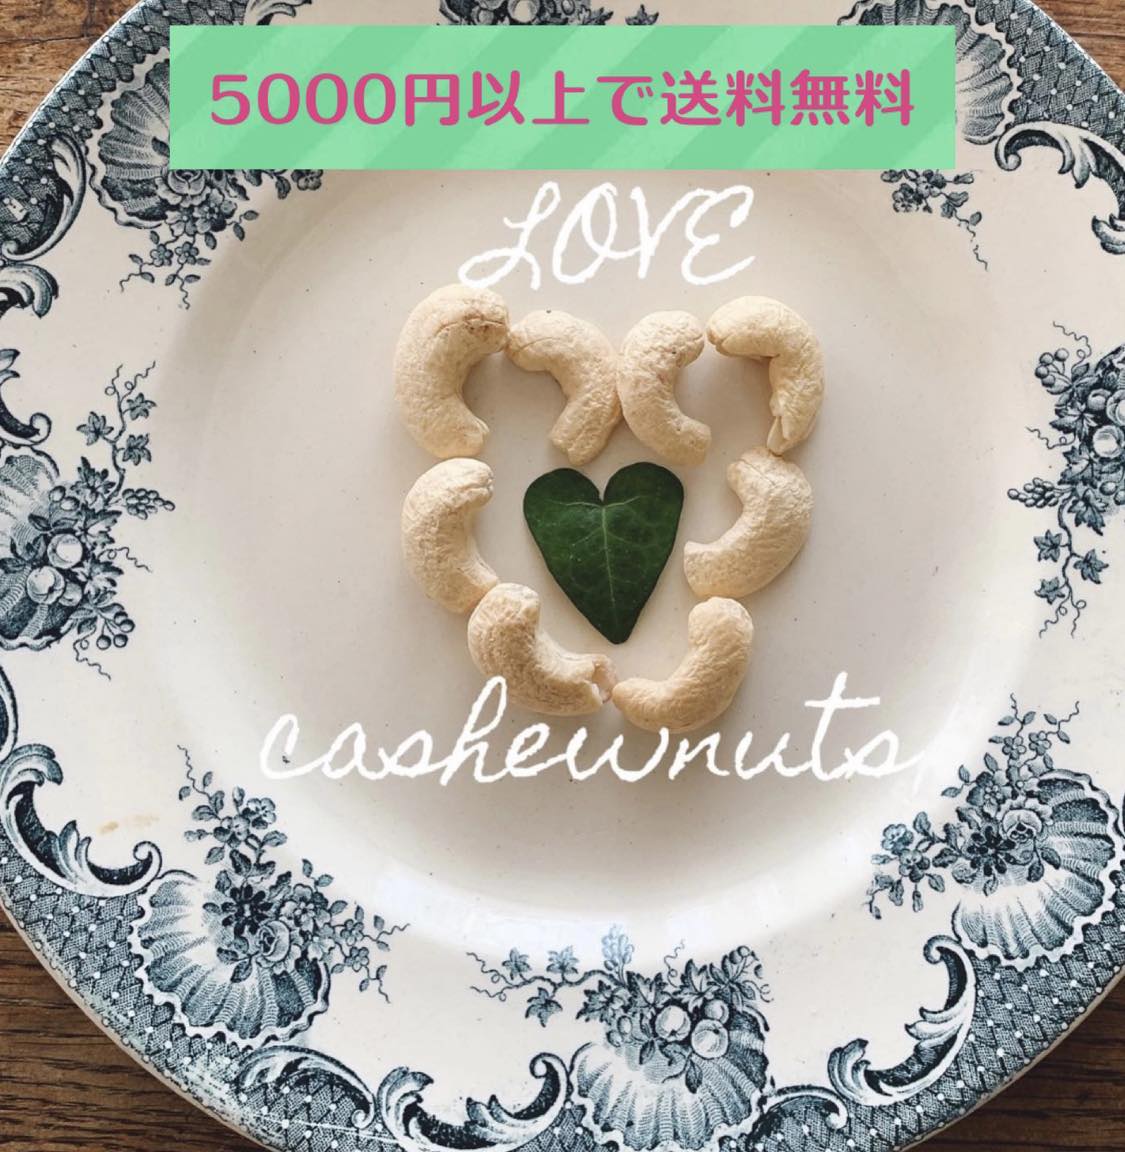 love_cashewnuts_honke